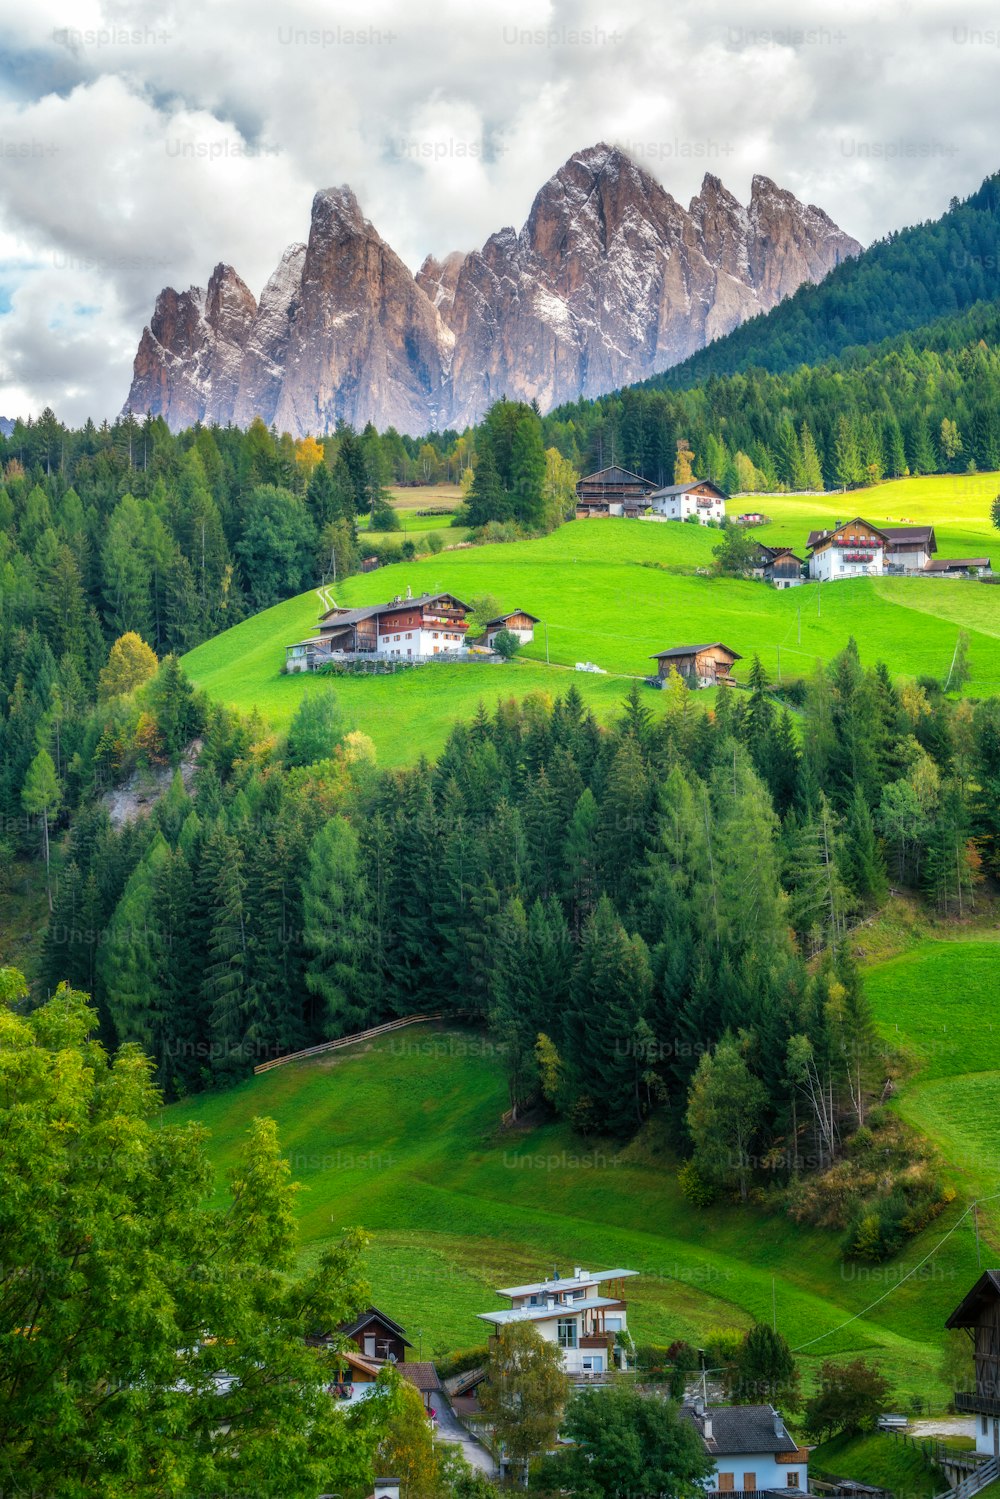 イタリア北部、南チロル州ドロミテ山脈北西部のプエズ・ガイスラー自然公園にあるガイスラー山群の風景が広がるヴィルノスの山村。